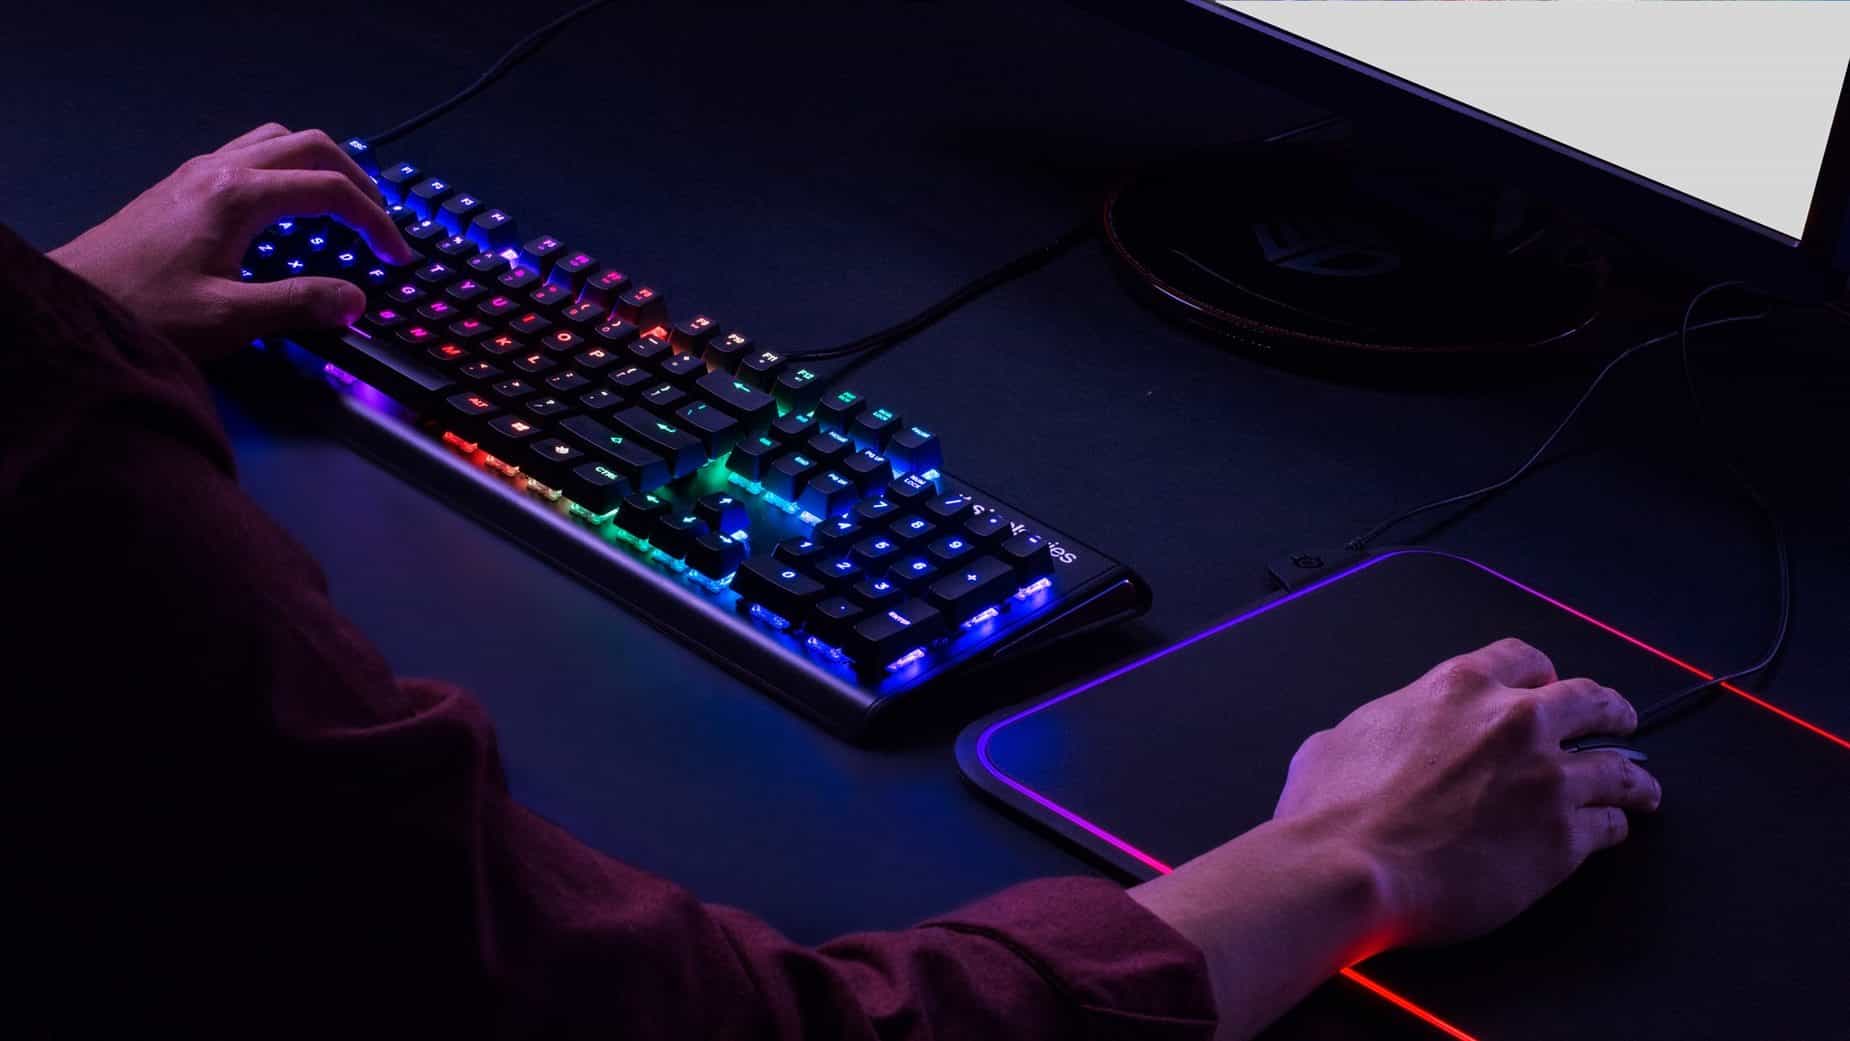 Meilleur clavier gamer : comment le choisir ? by